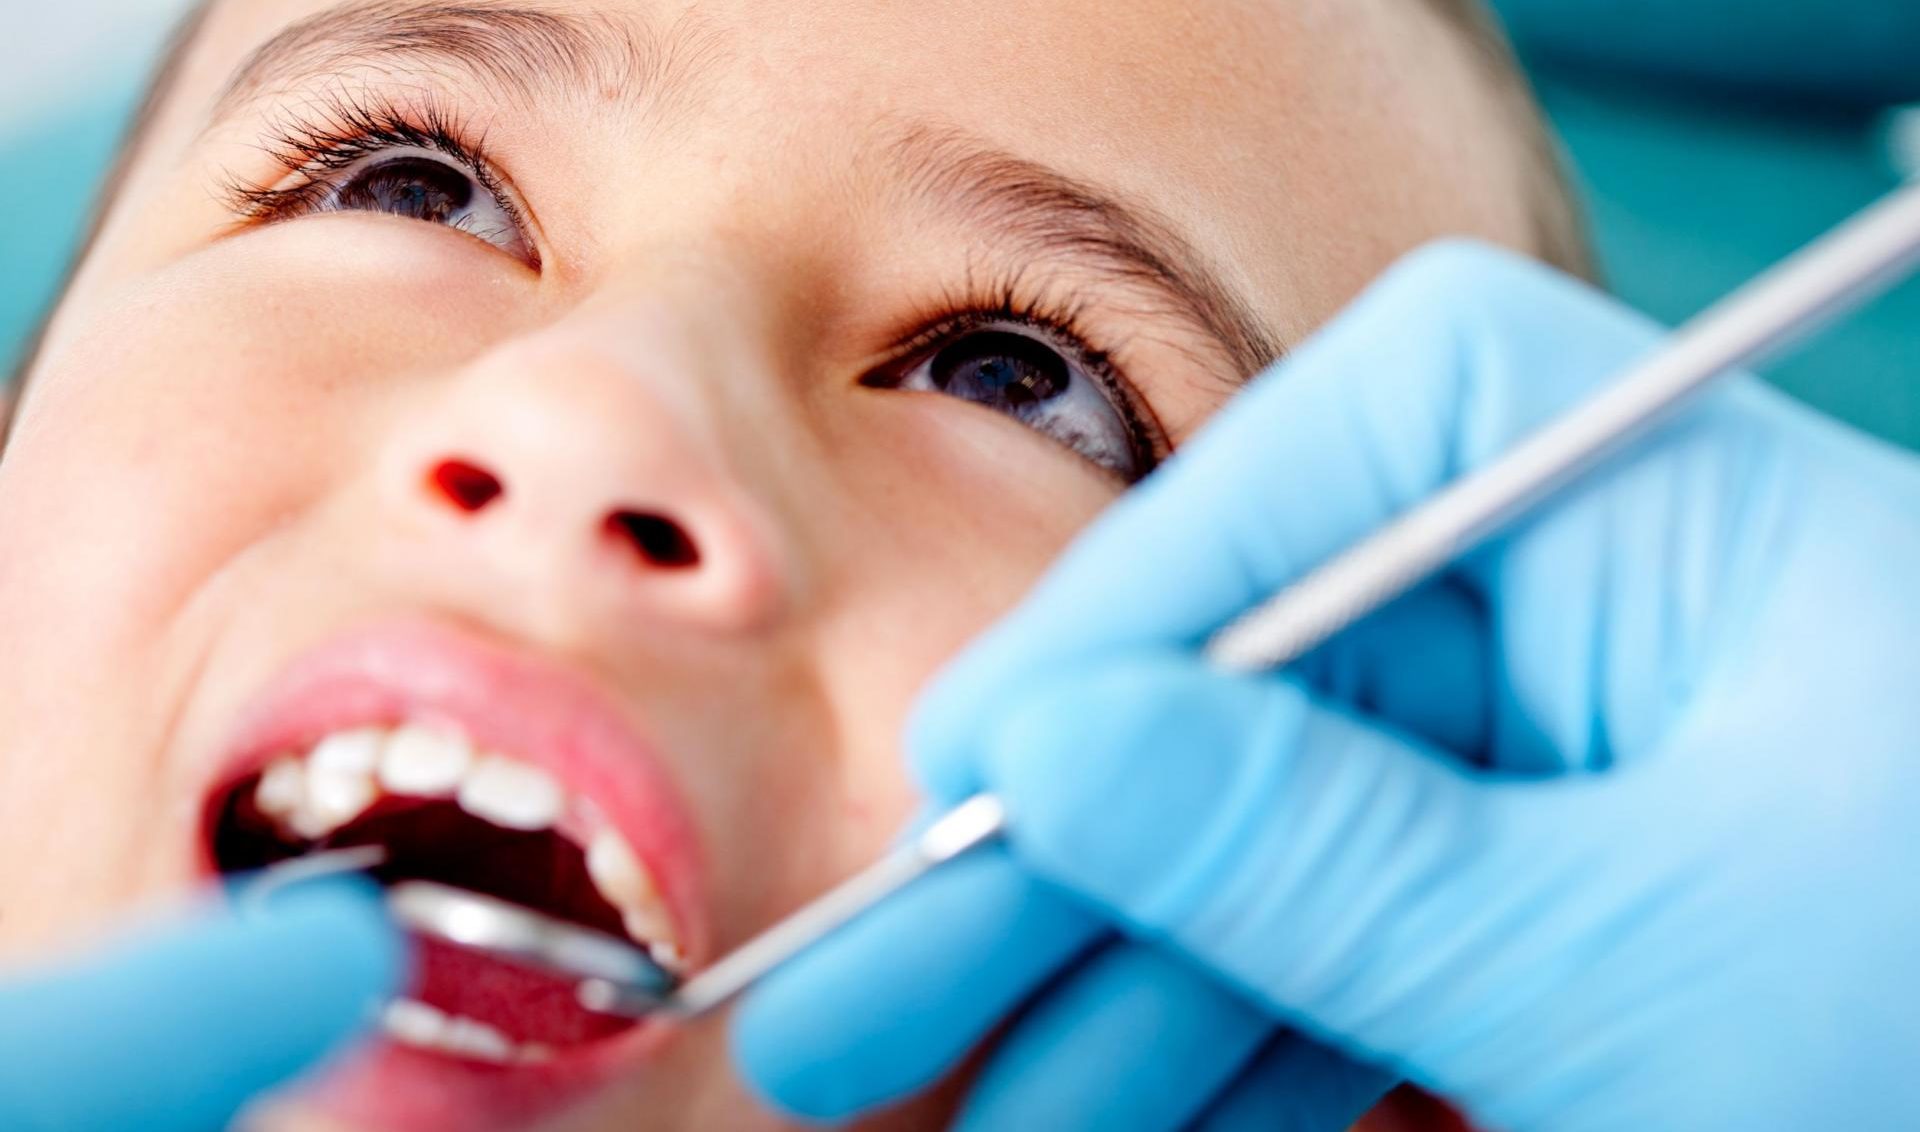 Когда ребенка вести к стоматологу - график посещения зубного врача детьми разного возраста